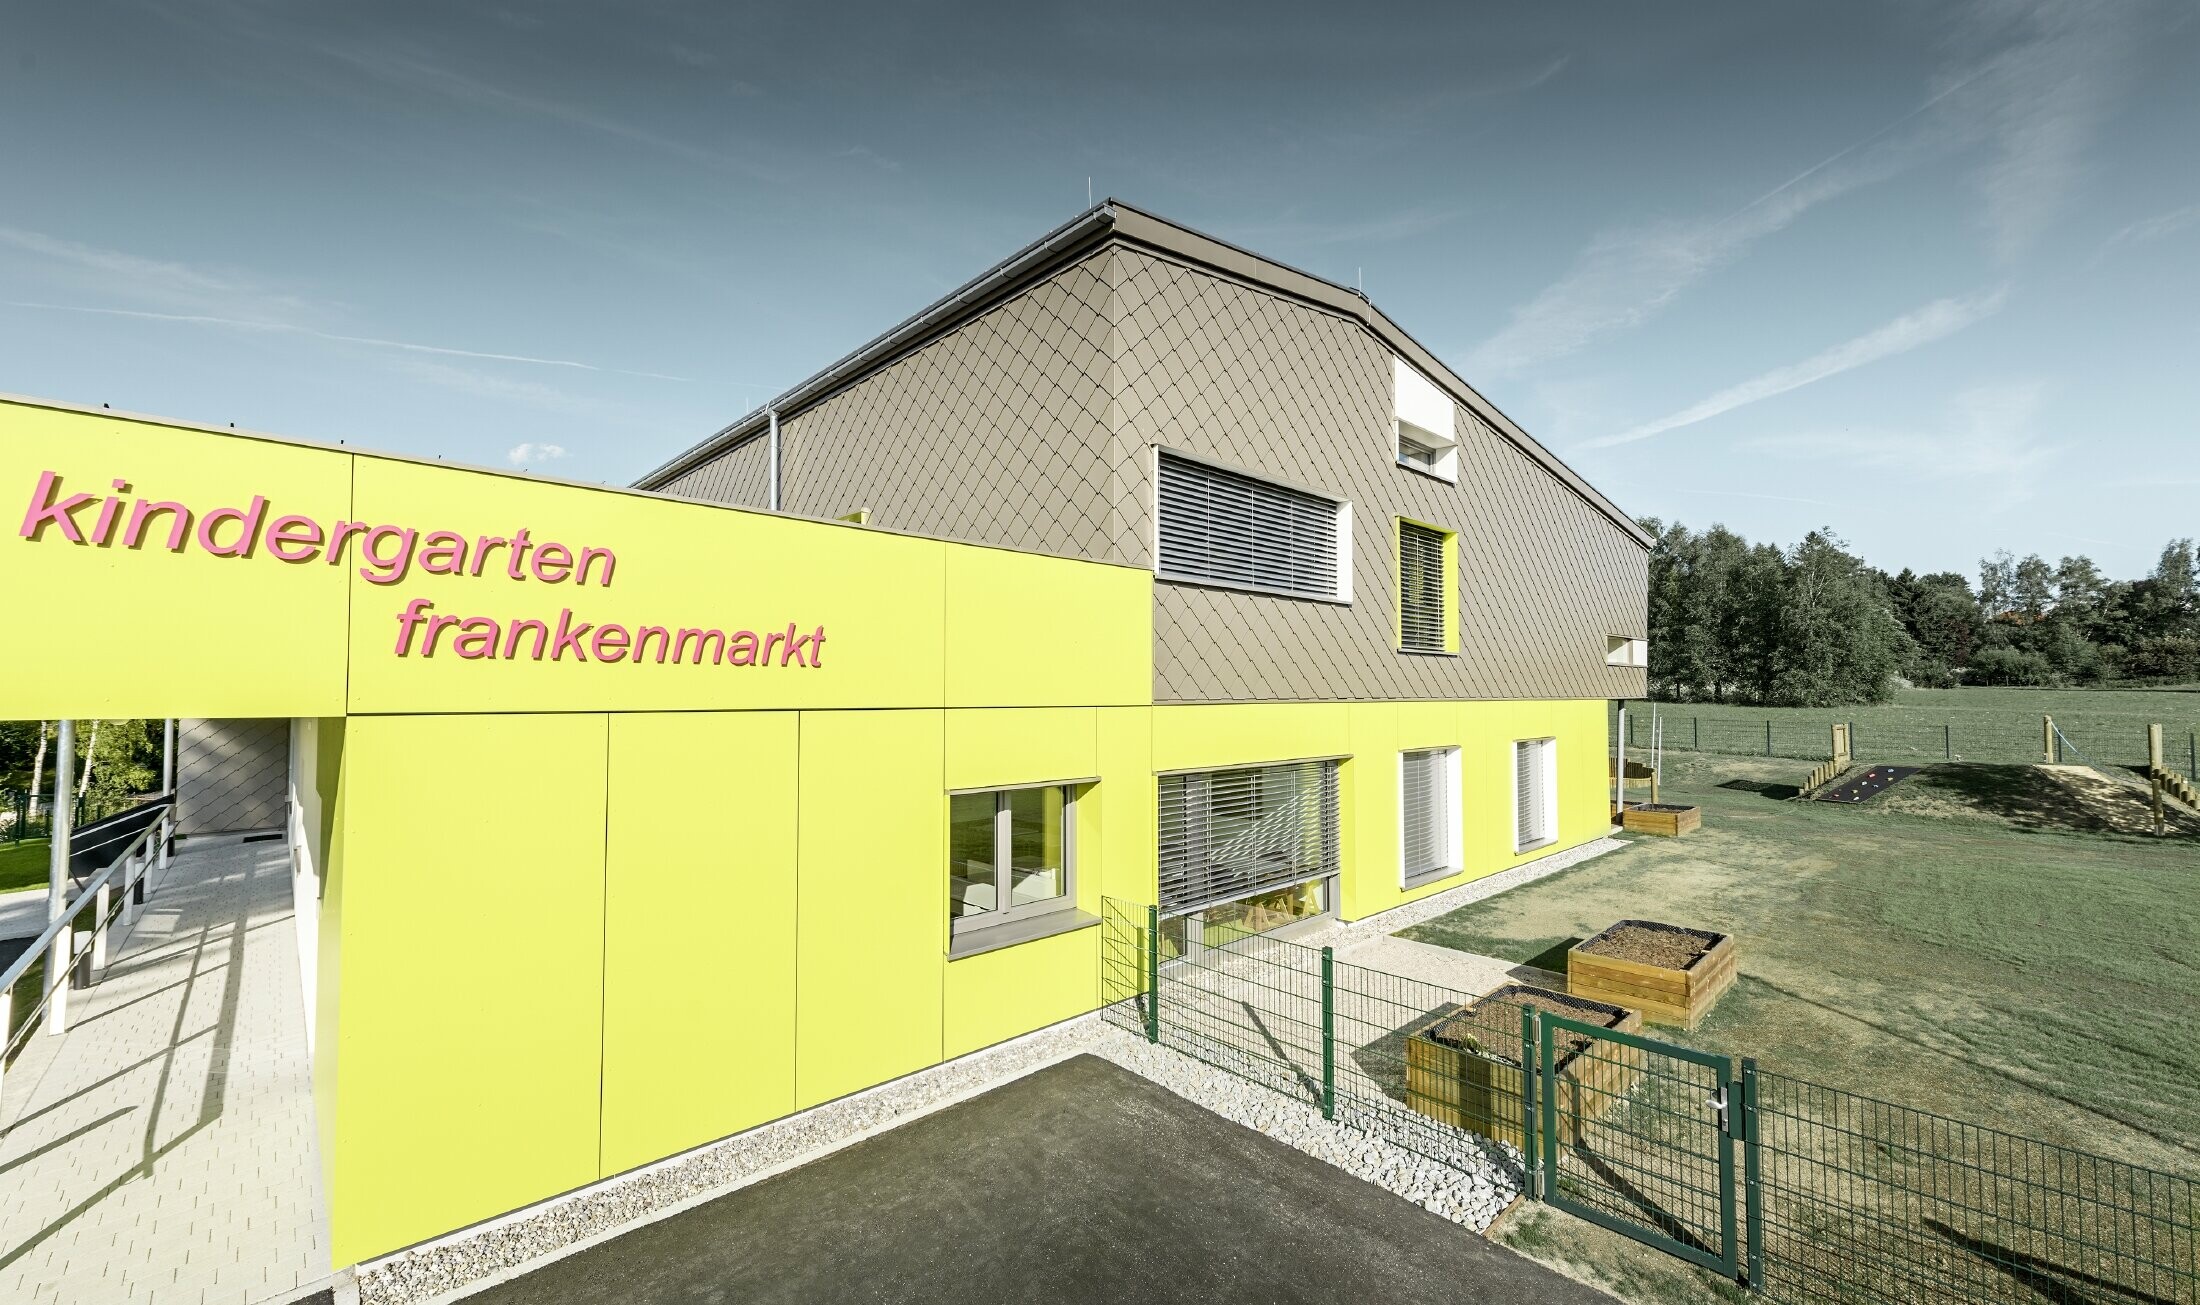 Elewacja przedszkola we Frankenmarkt została częściowo obłożona rombem fasadowym PREFA w kolorze brązowym. Resztę elewacji obłożono żółtymi płytami elewacyjnymi. Widoczny jest także napis z nazwą przedszkola.